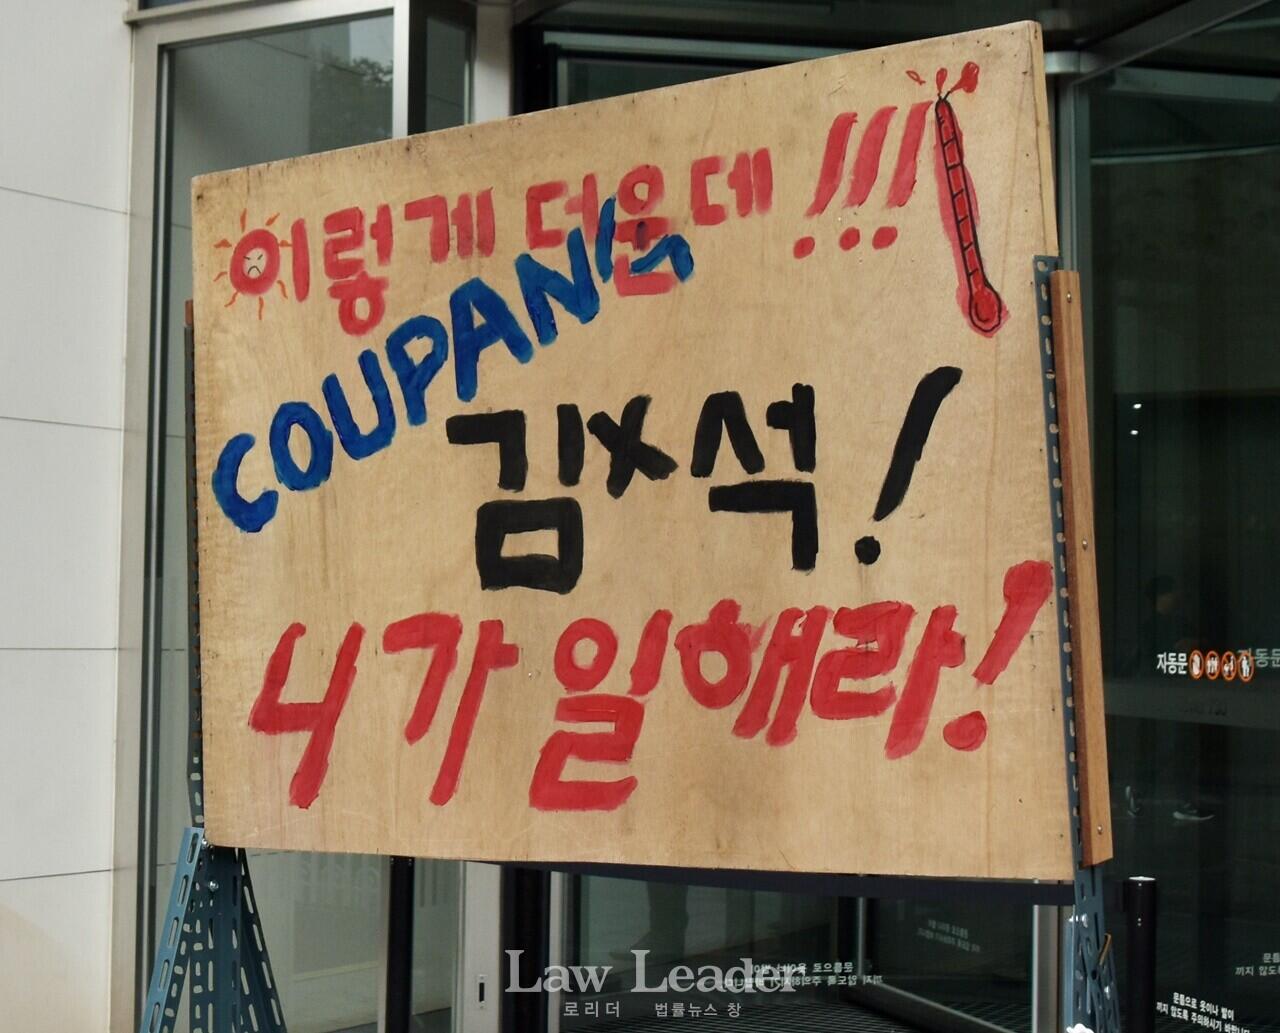 “이렇게 더운데, 쿠팡 김범석 니가 일해라”라고 적힌 판넬이 쿠팡 본사 앞에 있다.